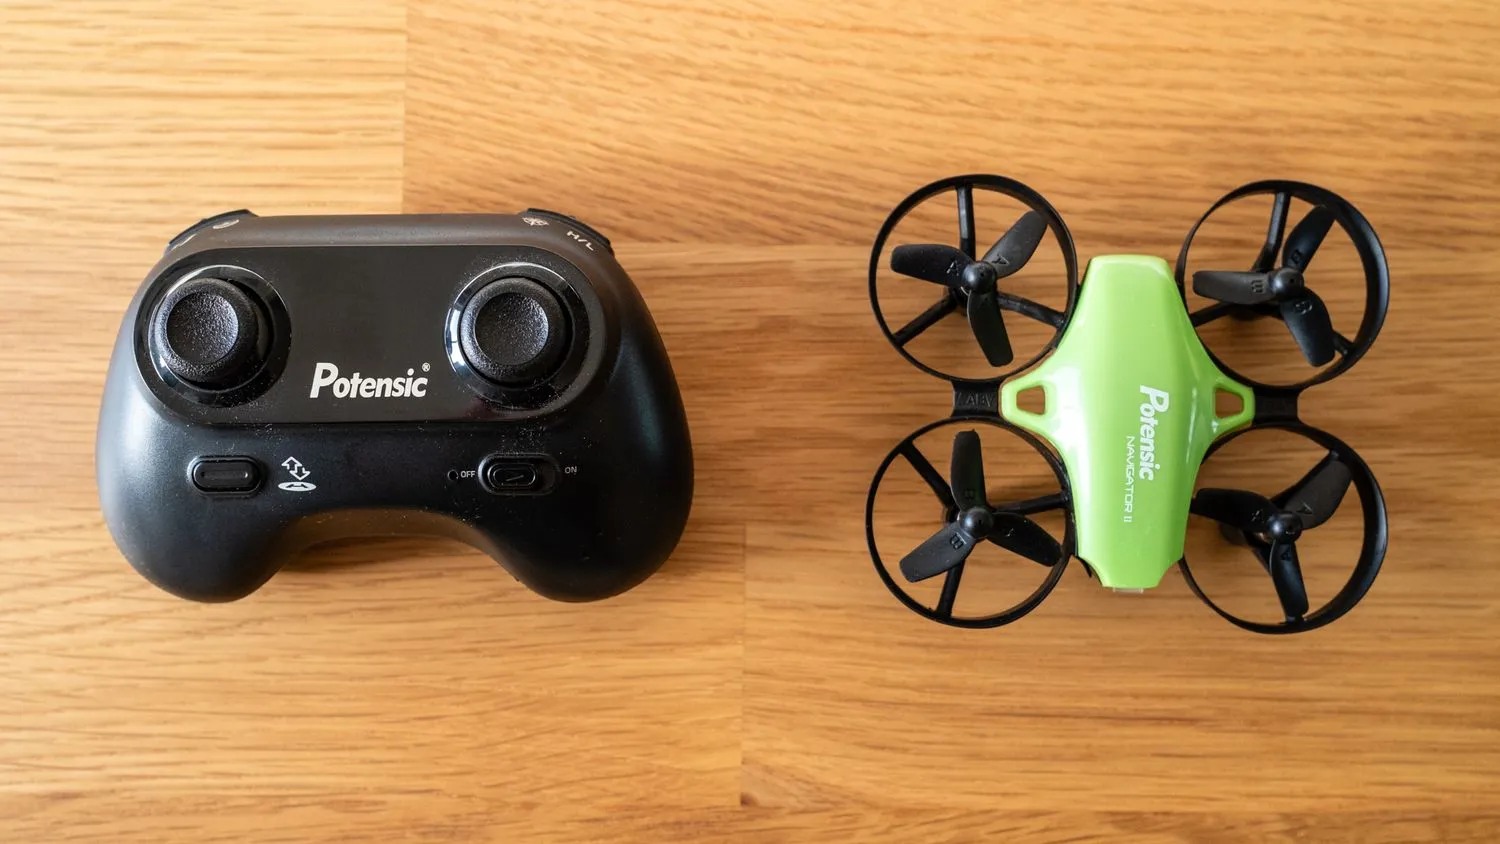 Potensic A20 Mini-Drohne und Controller nebeneinander auf einem Holztisch